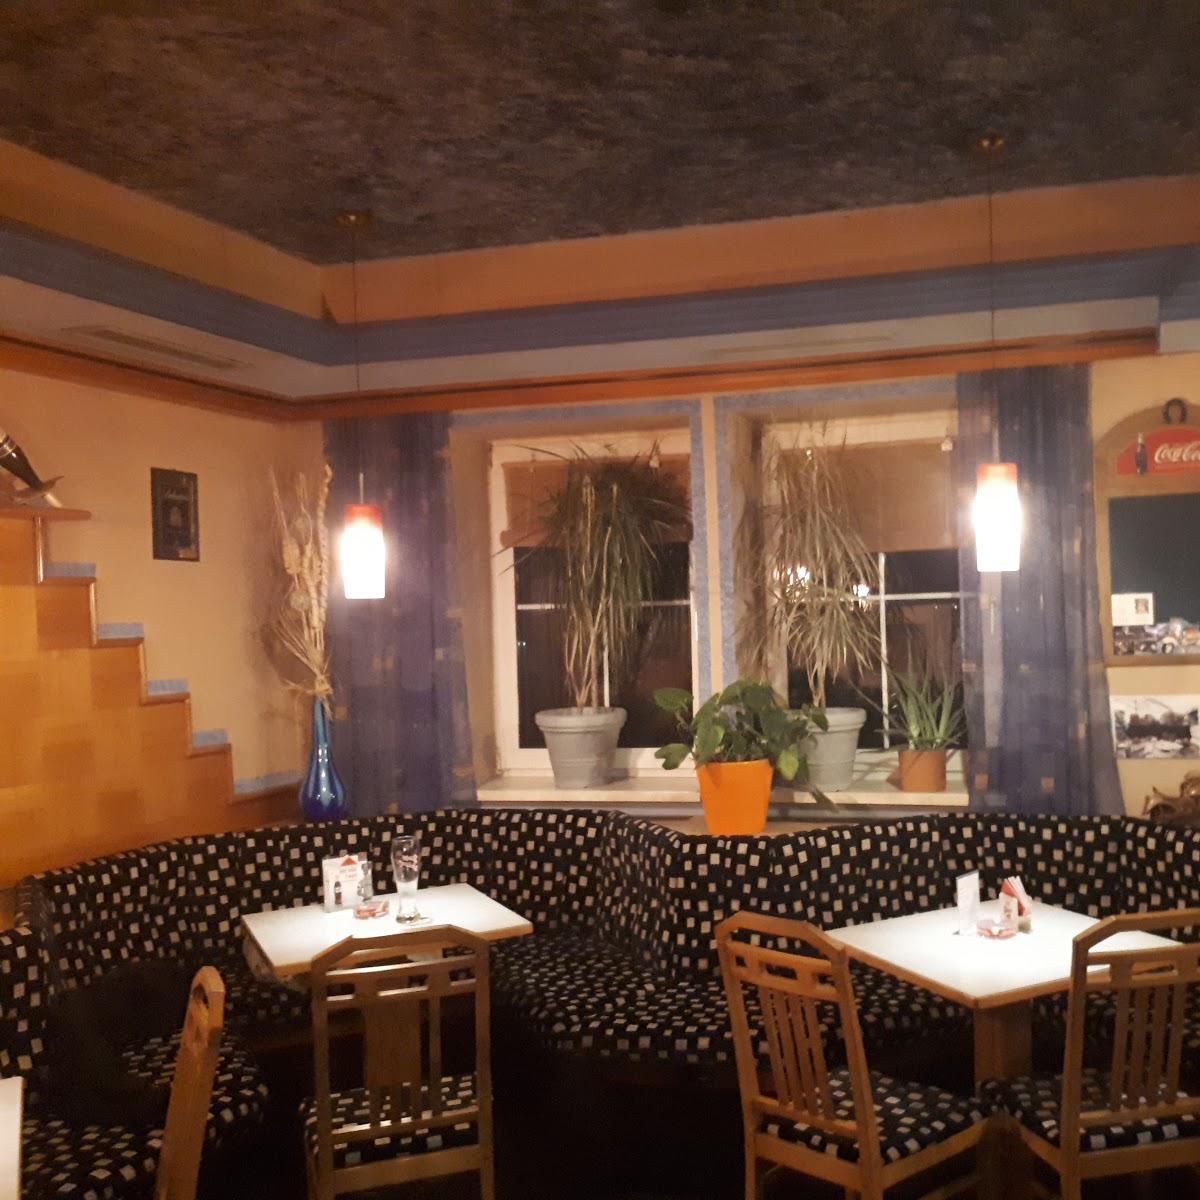 Restaurant "Harlekin Cafe-Bar" in Hofkirchen an der Trattnach